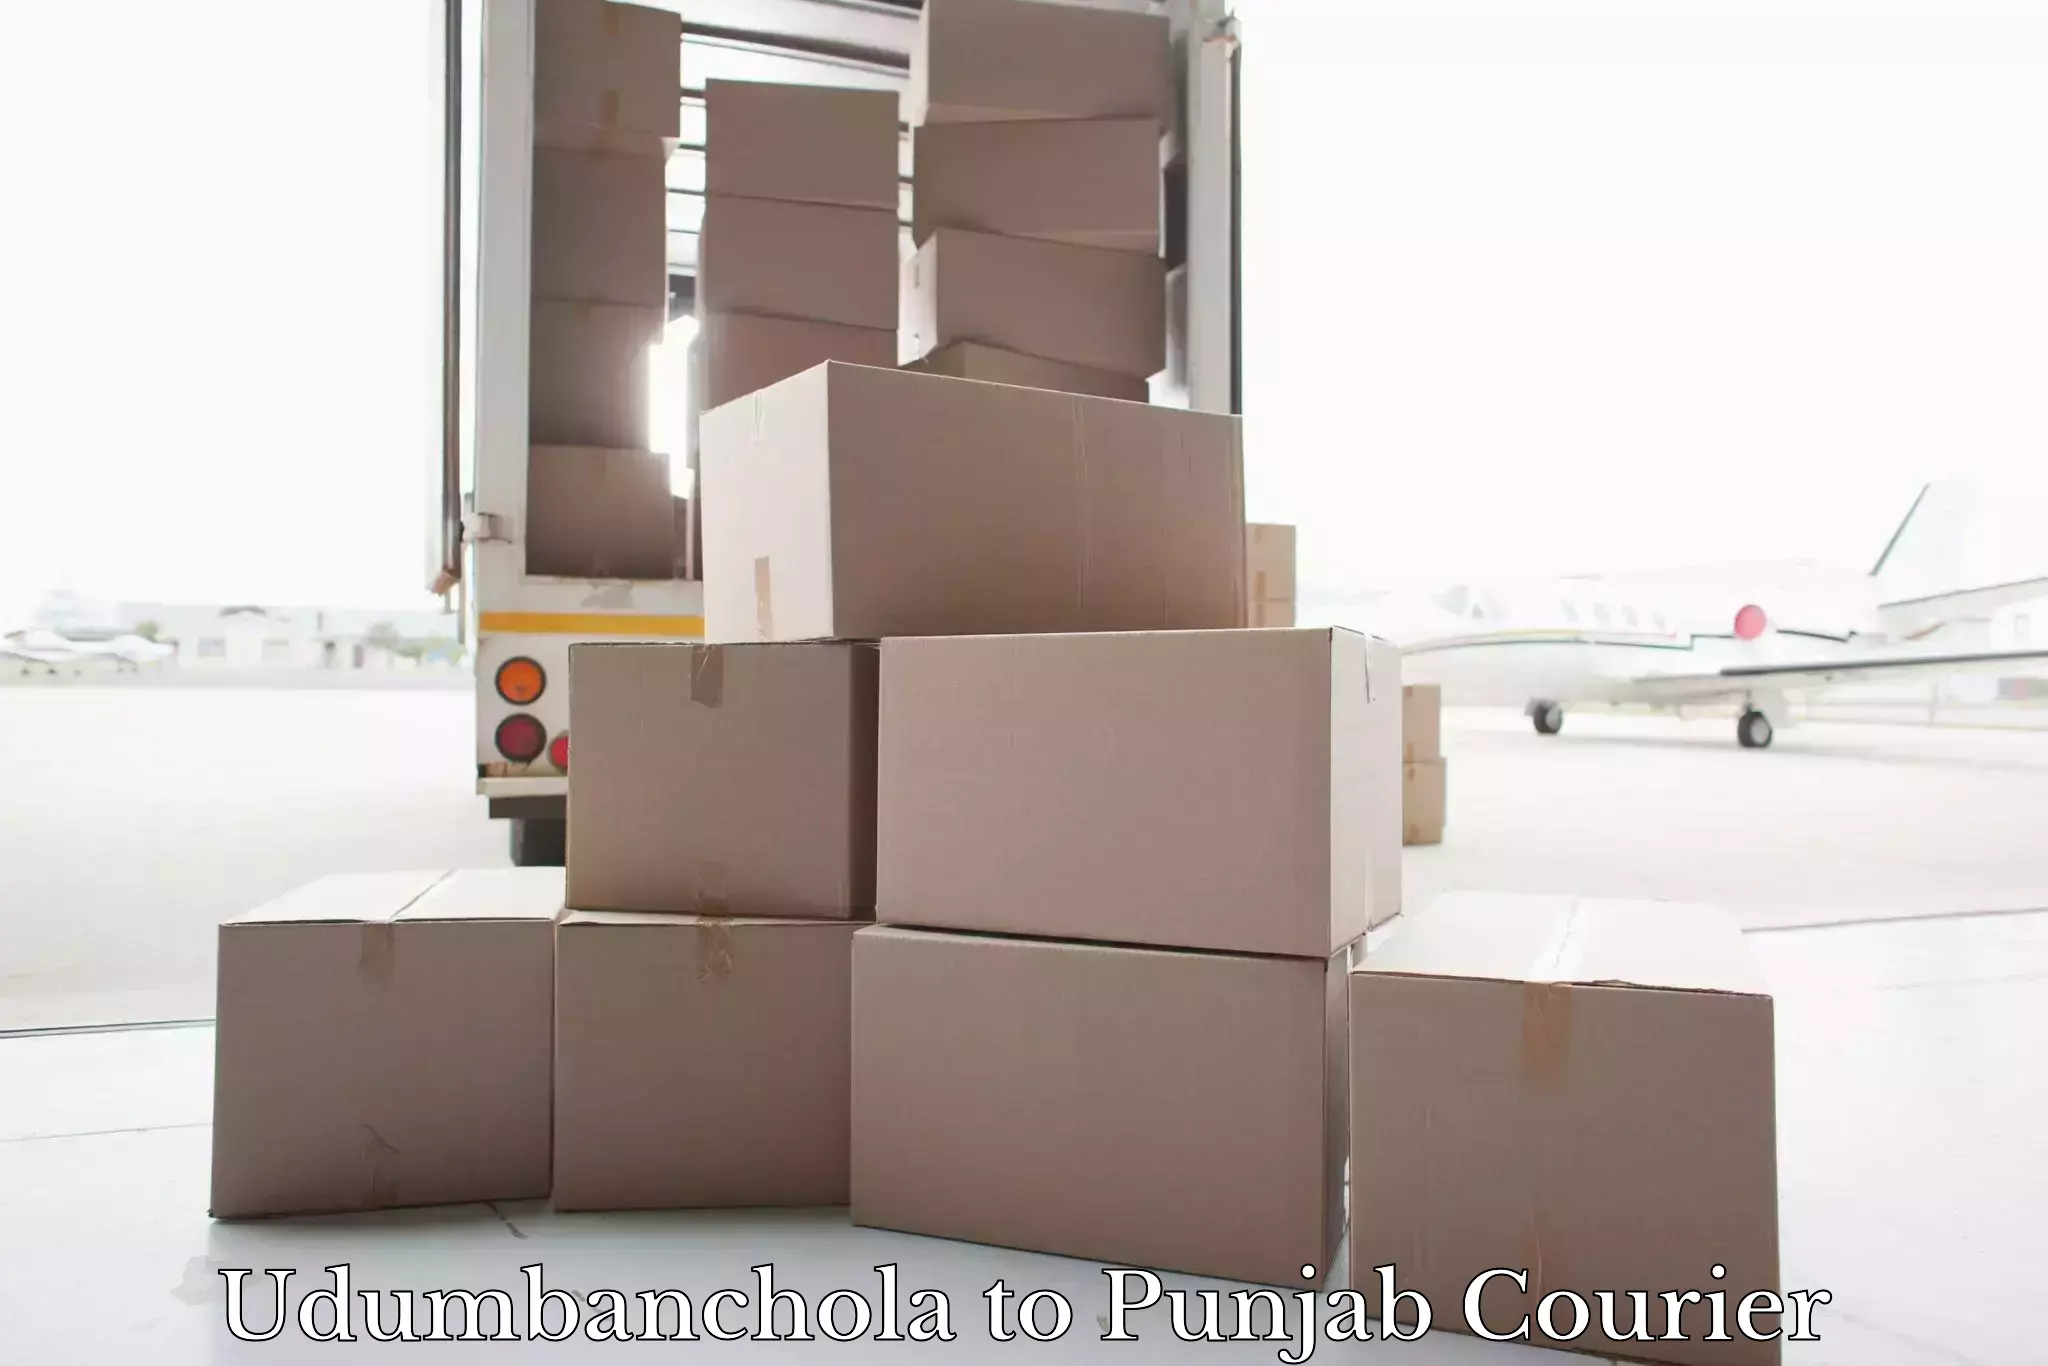 Luggage delivery logistics Udumbanchola to Rupnagar